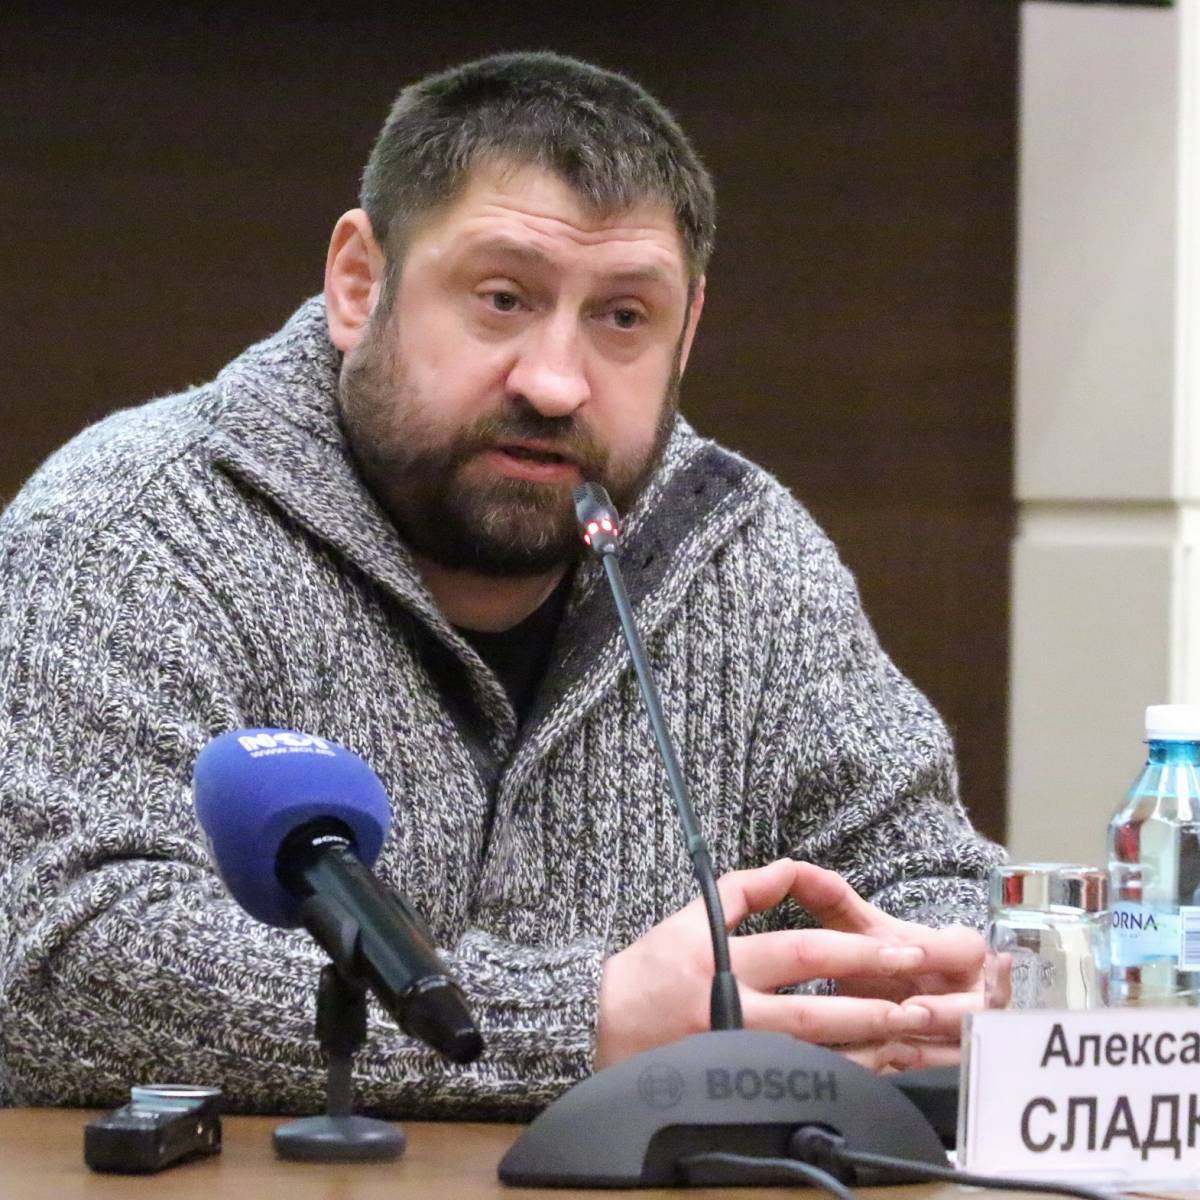 Сладков: Киев скоро начнет избавляться от "правосеков" и добробатов